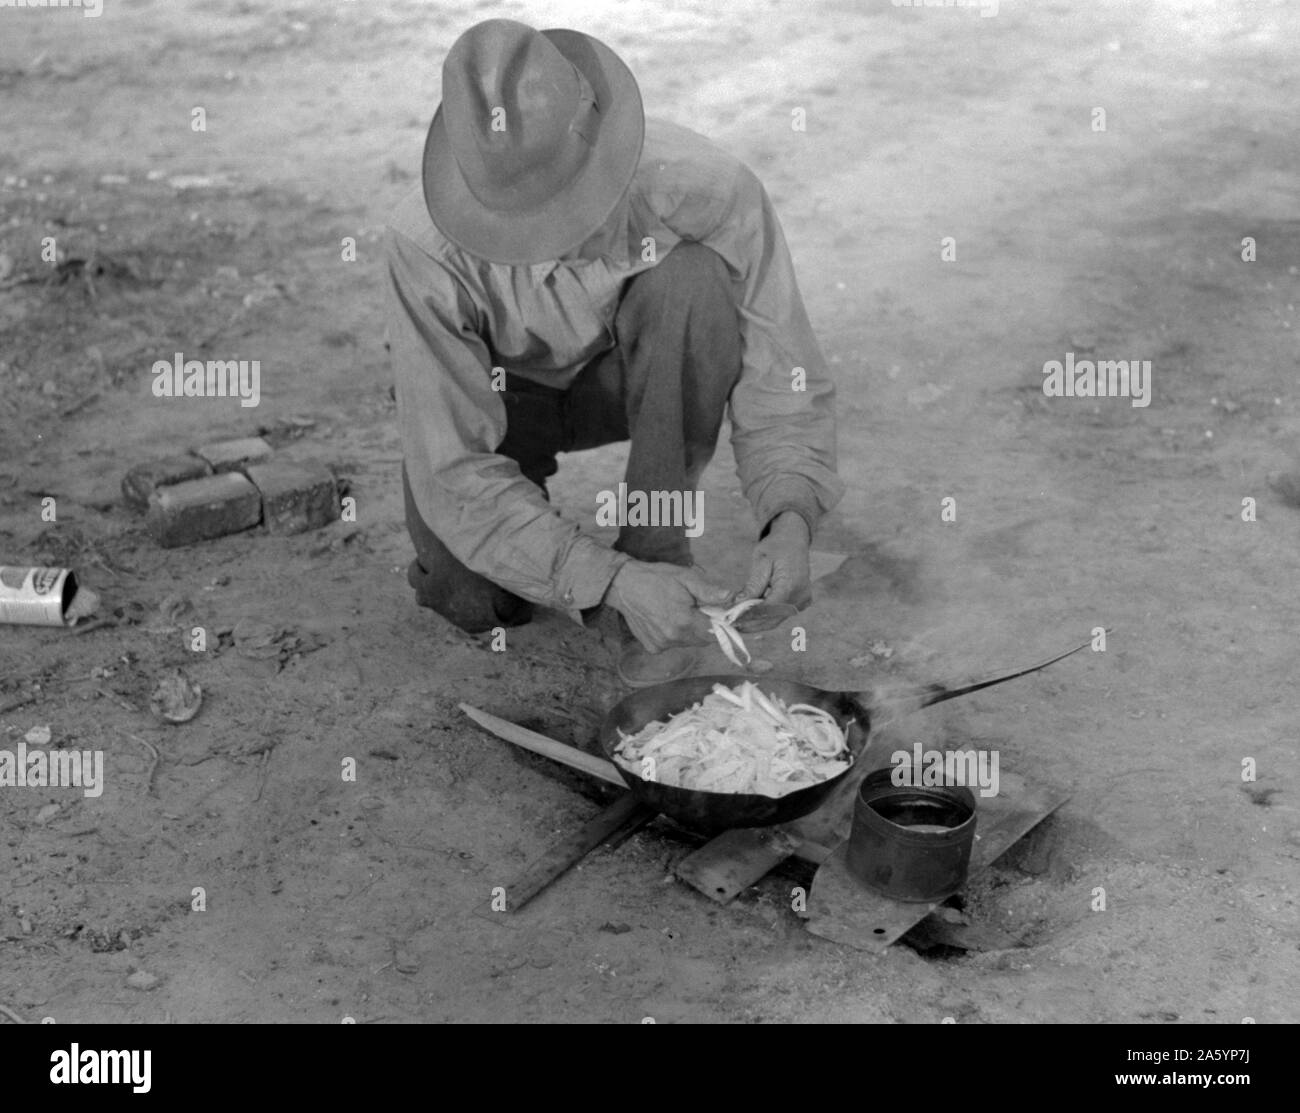 Wanderarbeitnehmer kochen Essen über dem Lagerfeuer, Edinburg, von Russell Lee, 1903-1986, Fotograf Veröffentlichung: 19390101 Feb. Stockfoto